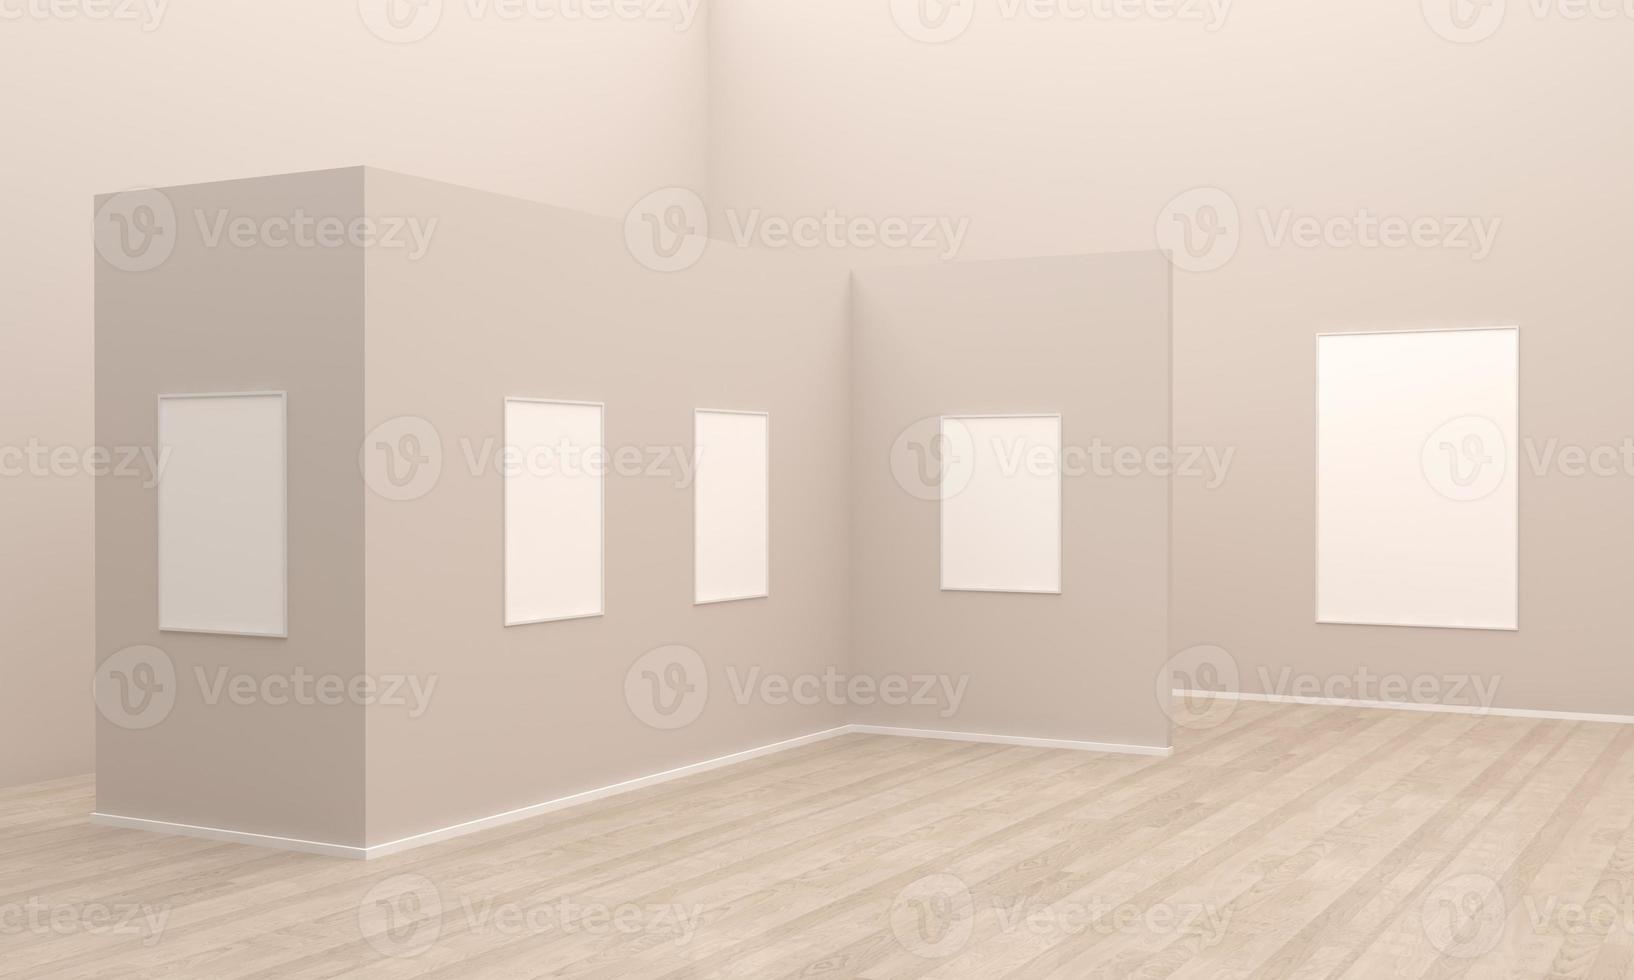 maqueta de marcos de galería de arte ilustración 3d y renderizado 3d foto